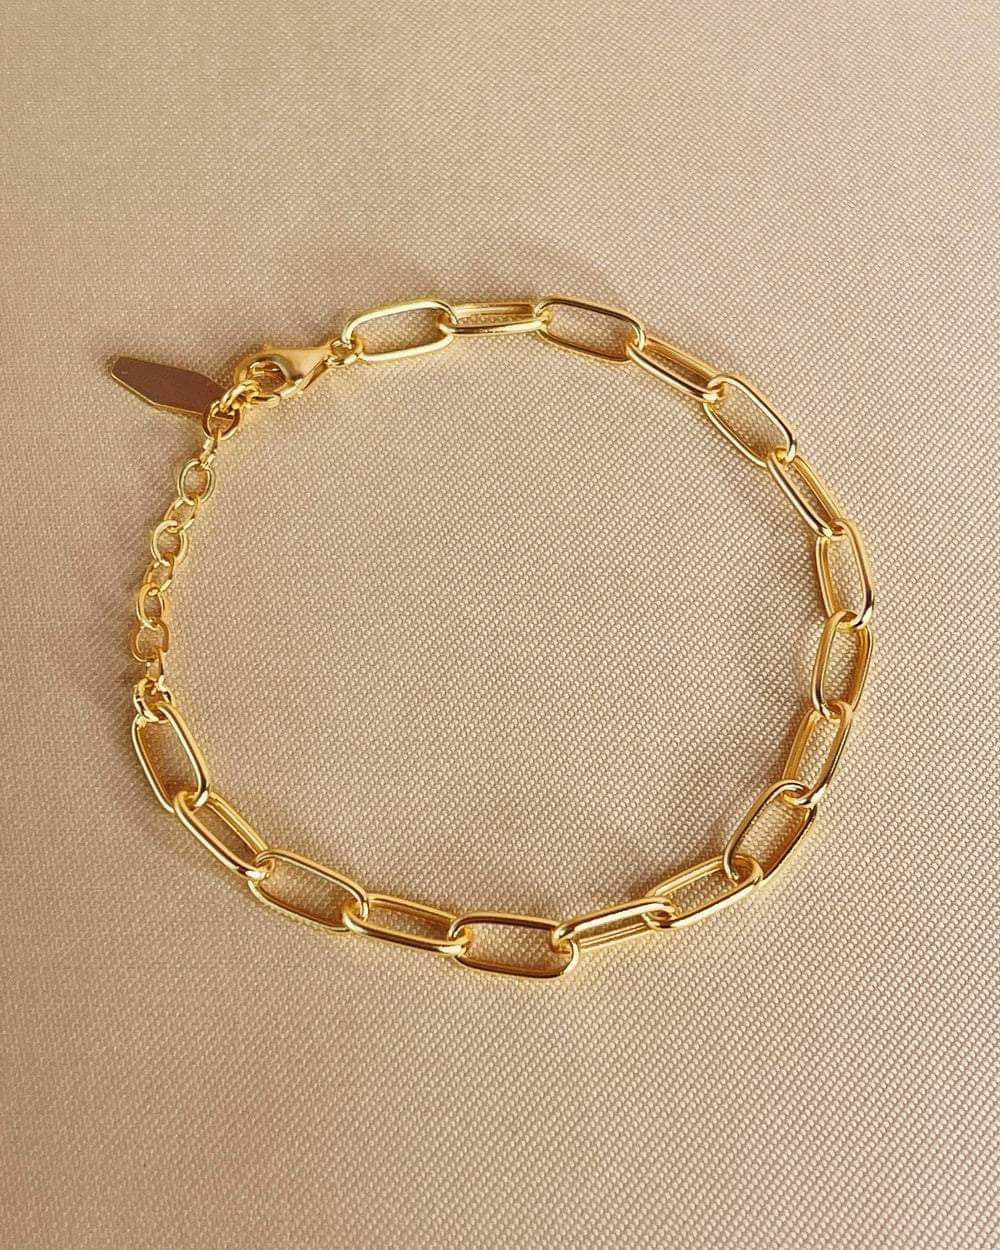 So Dainty Co. Bracelets Frances Gold Bracelet Gold Plated 925 Sterling Silver Jewelry